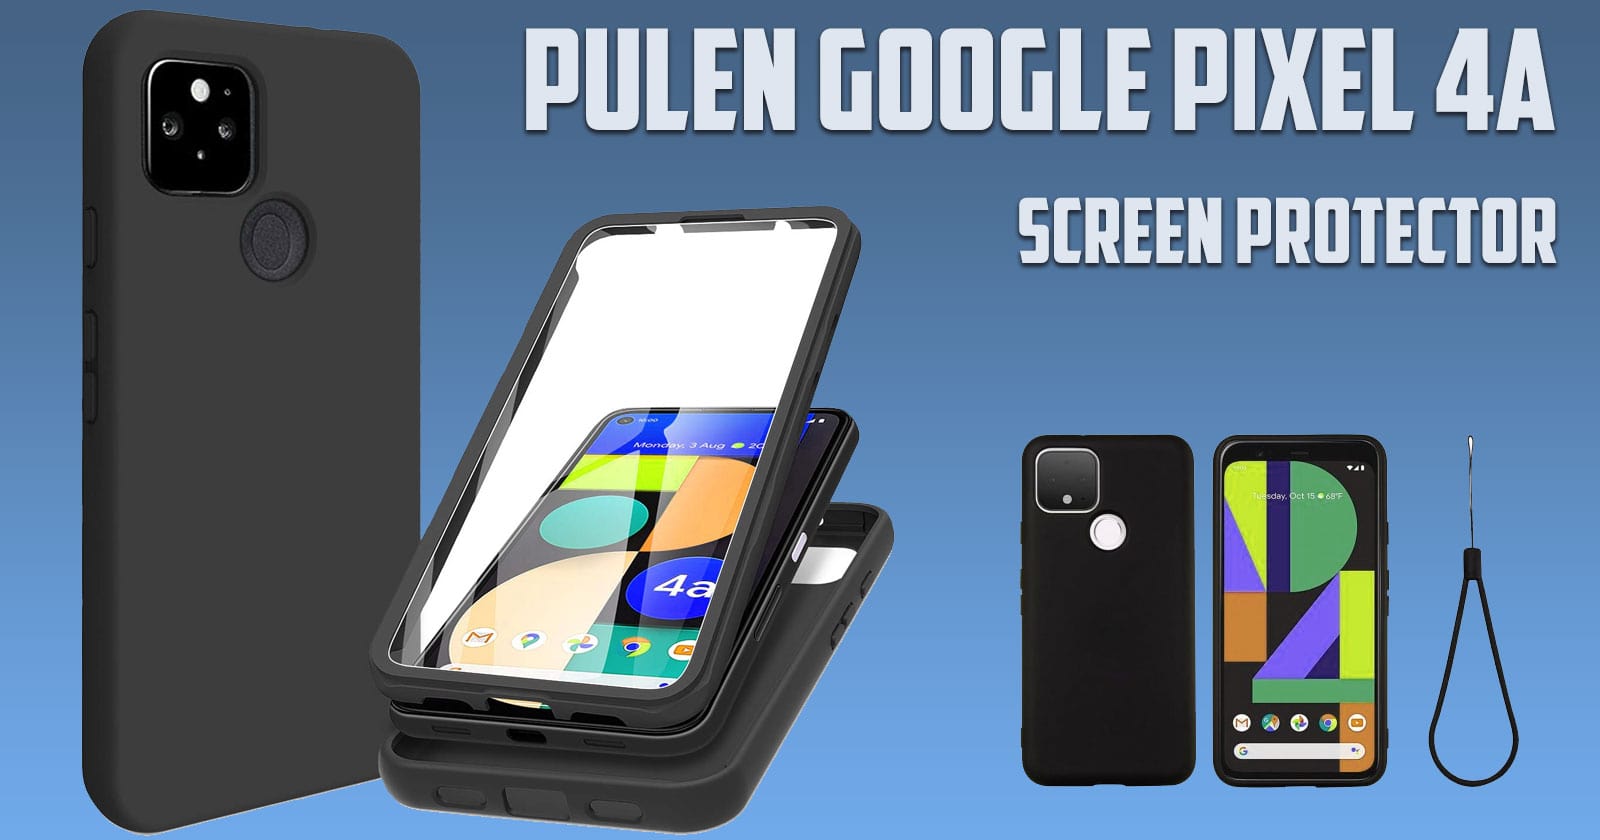 PULEN Google Pixel 4A Screen Protector